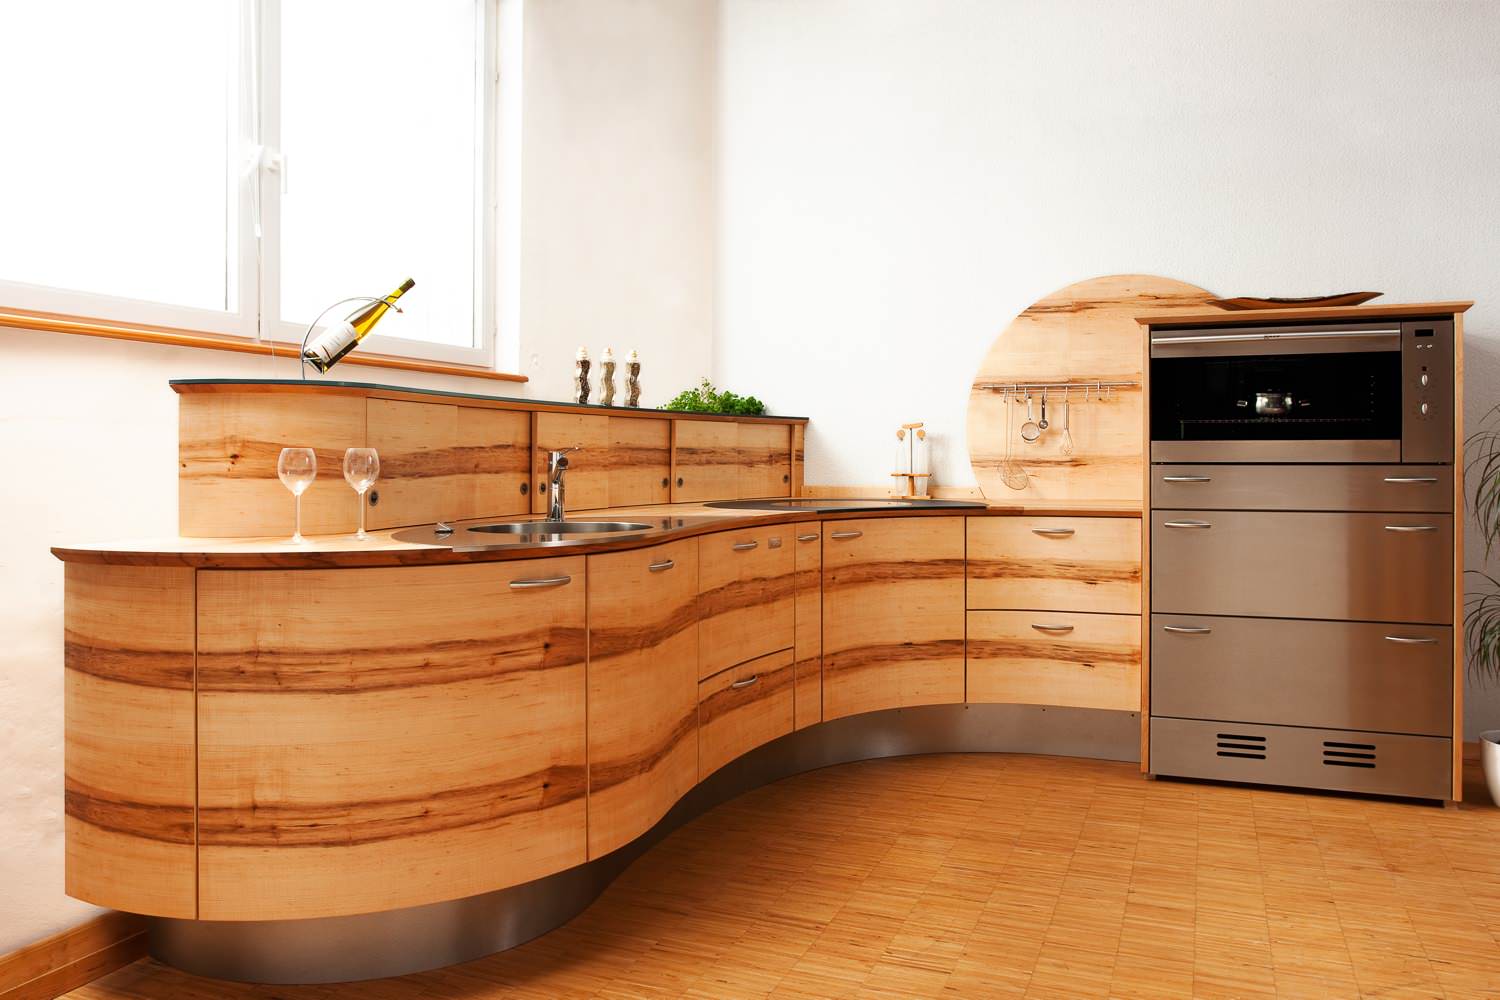 Runde Küche Modell Welle: Designküche - Pfister Möbelwerkstatt - Farmhouse  - Kitchen - Other | Houzz